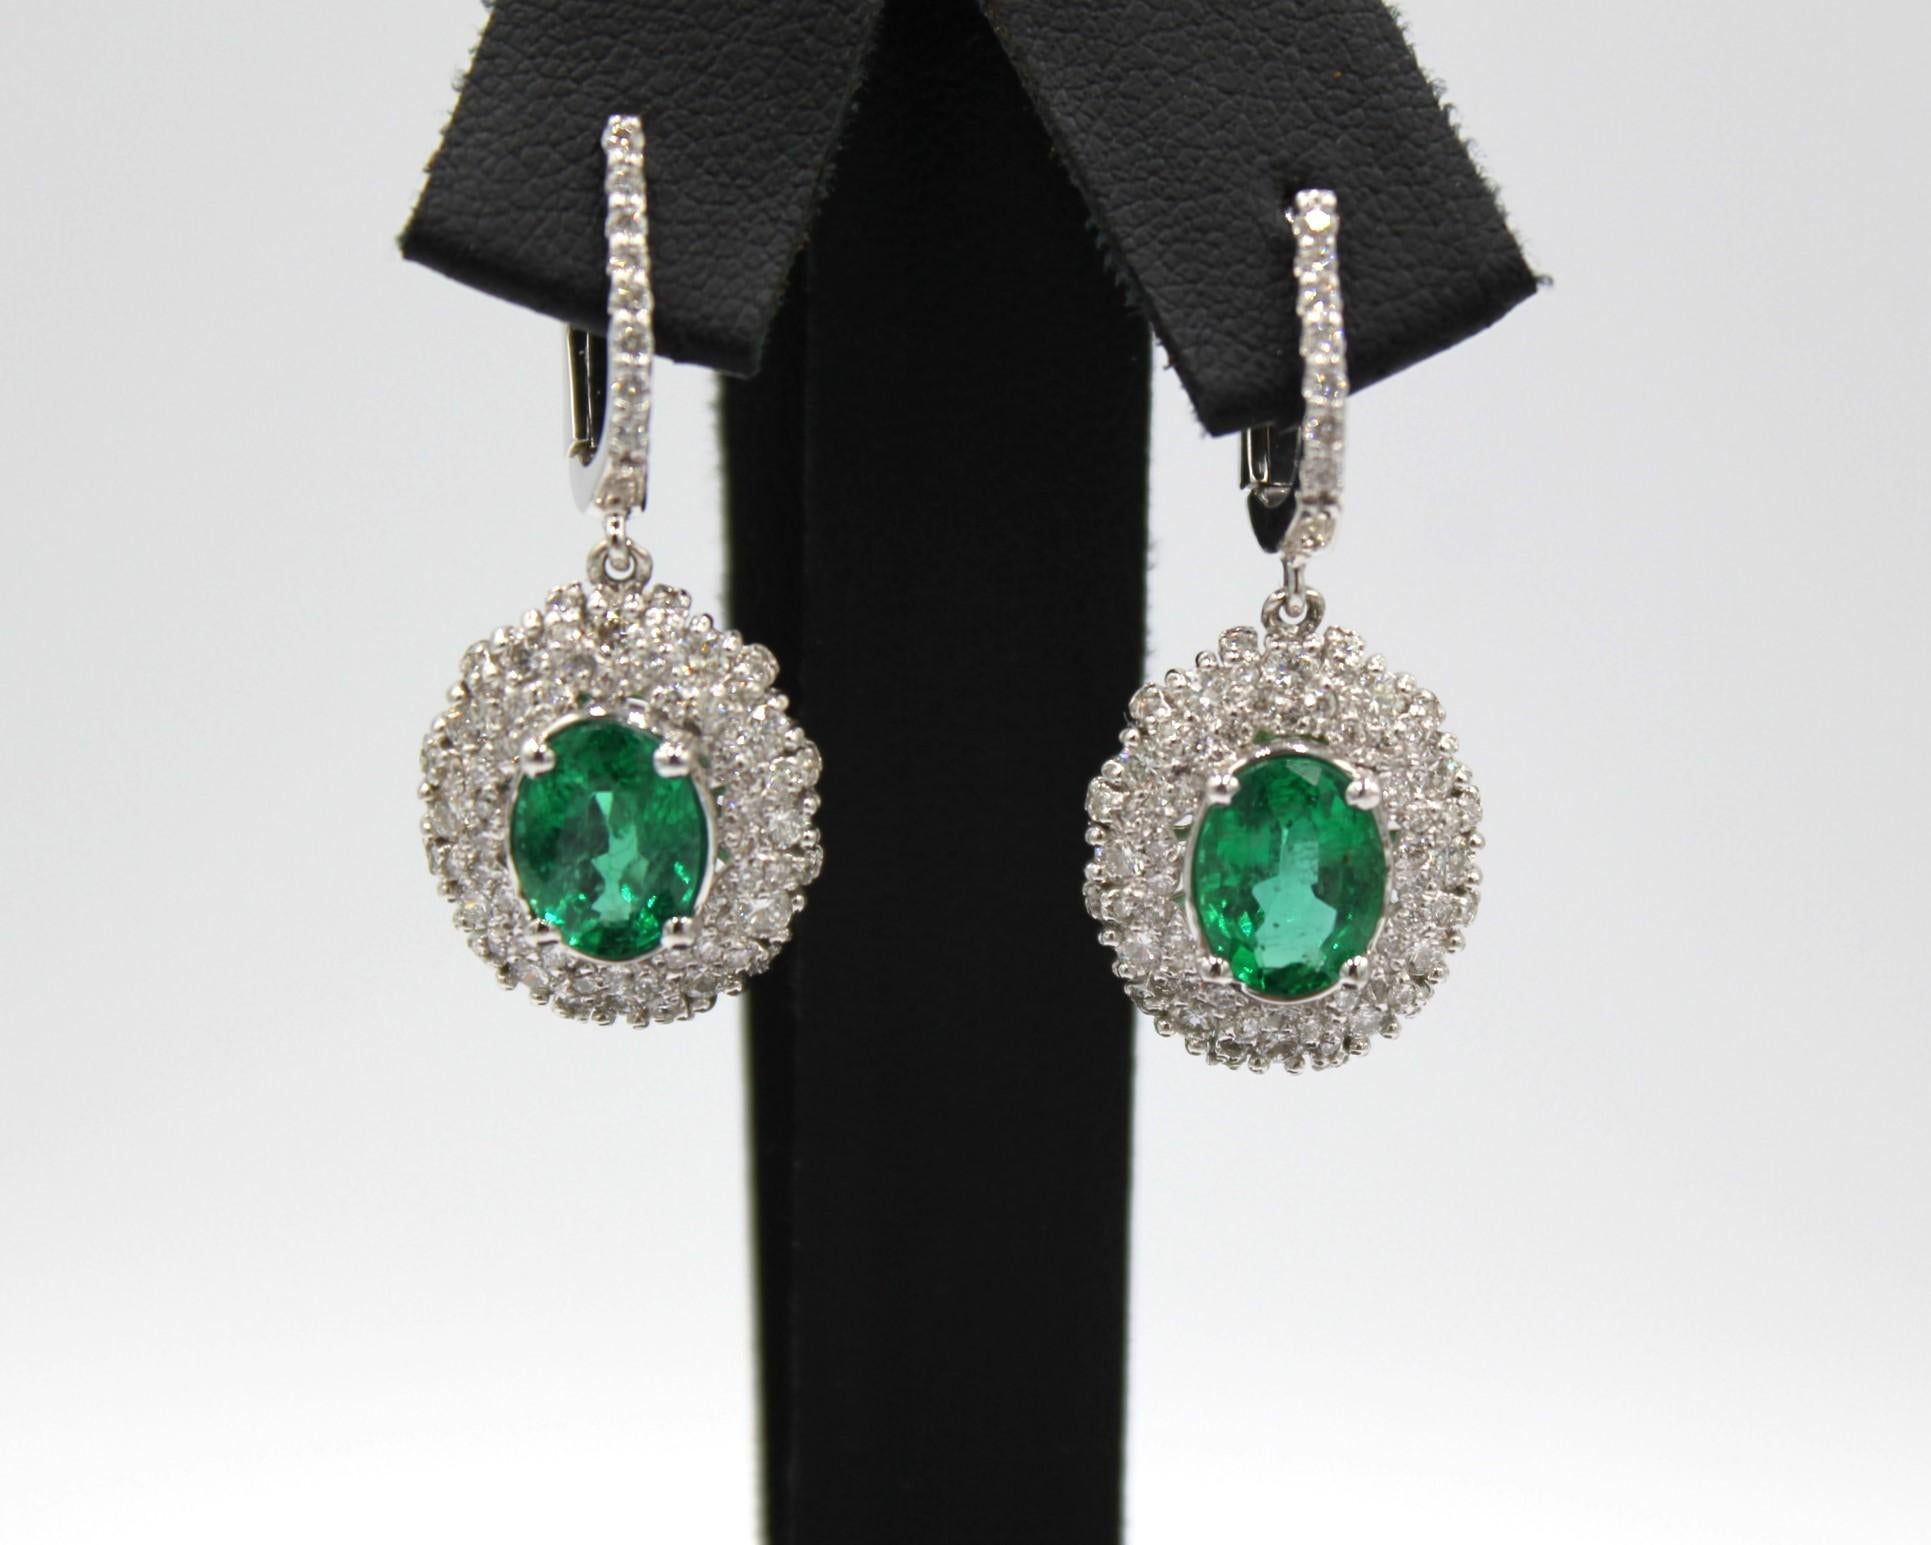 2,54 Karat Gepaarte ovale sambische Smaragde und 134 runde Diamanten mit einem Gesamtgewicht von 1,54 Karat. 

Dieser wunderschöne Smaragd-Diamant-Ohrring wird Ihre Eleganz und Einzigartigkeit unterstreichen. 

Artikel-Details:
- Typ: Ohrring
-